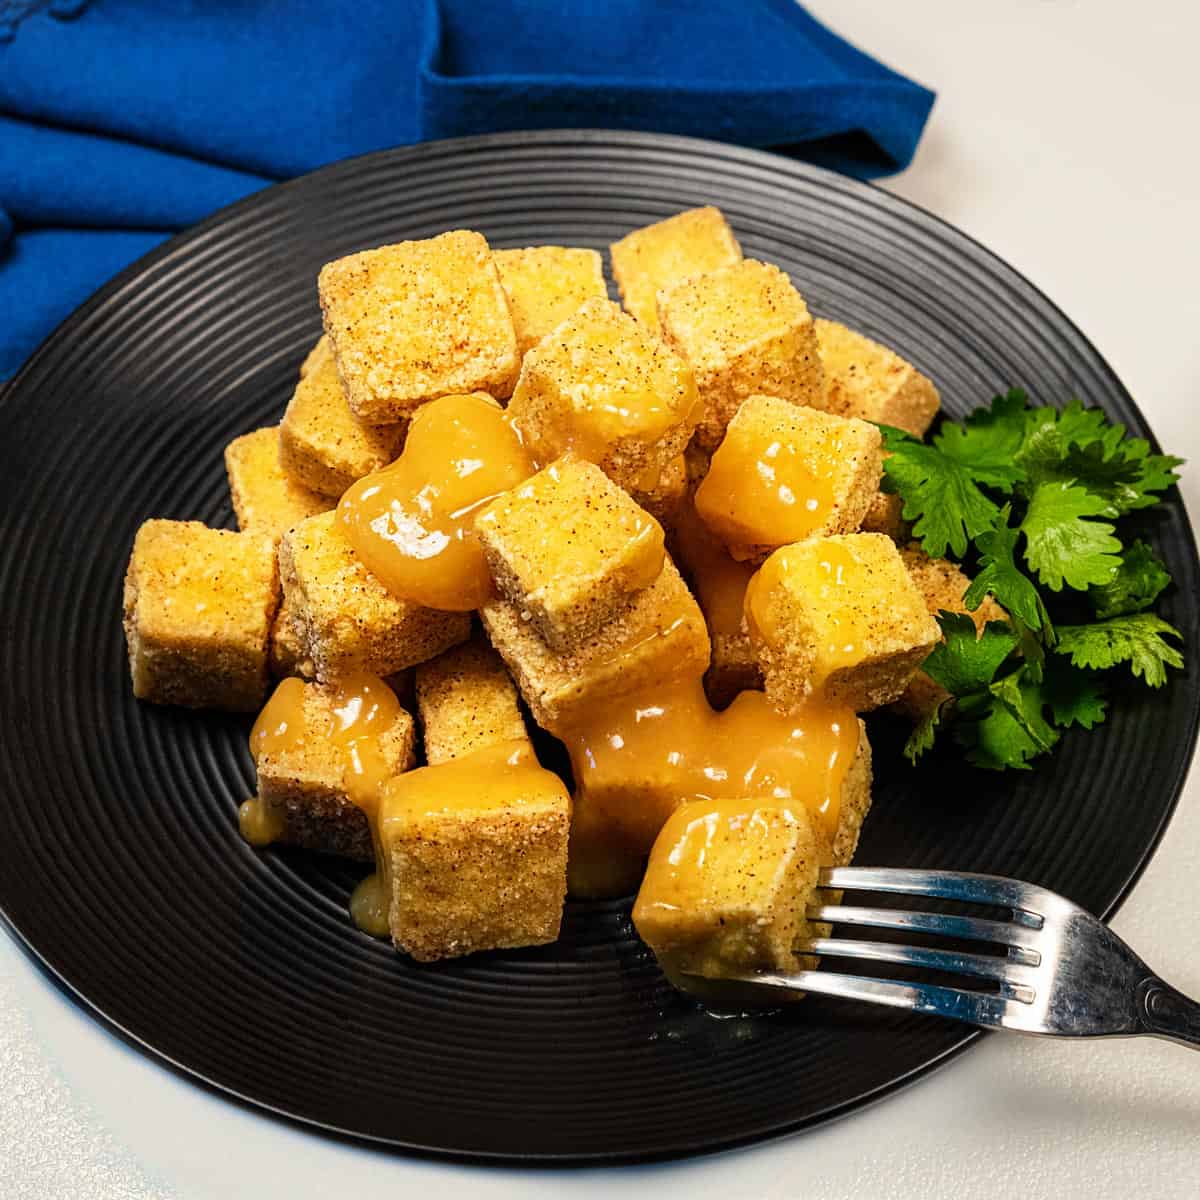 Plate of crispy tofu bites with orange sauce.